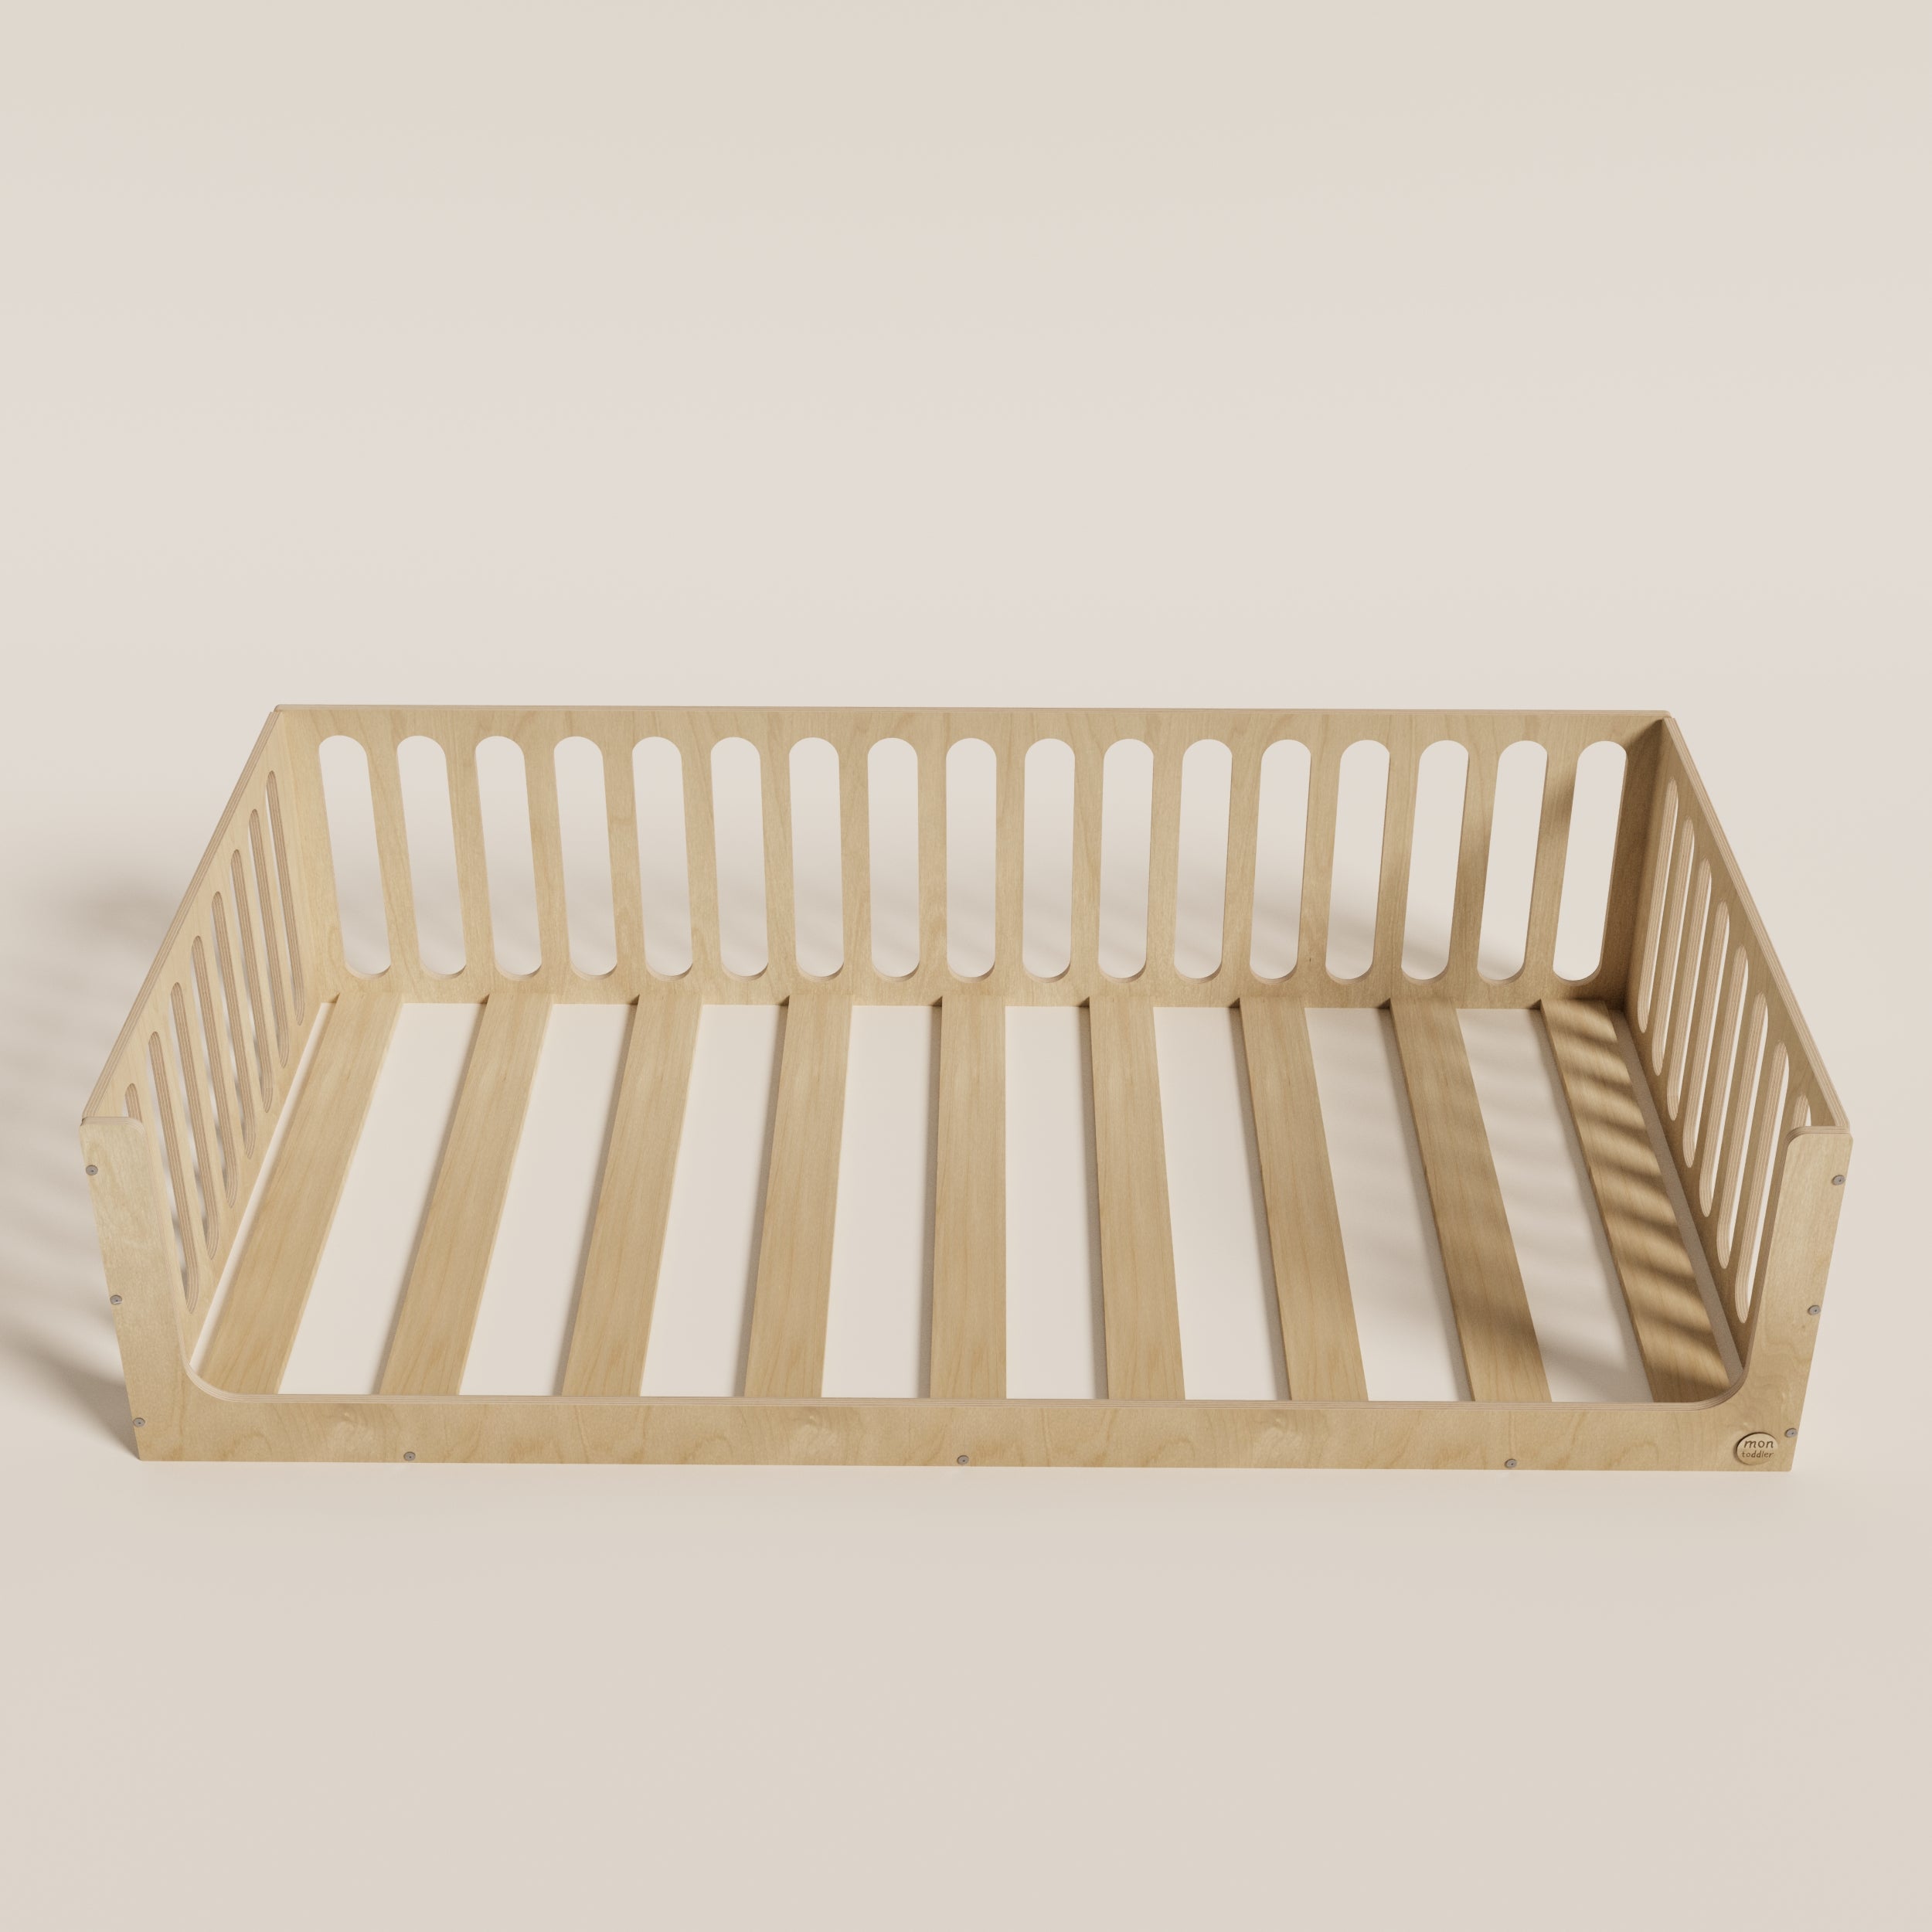 Floor Bed for Toddler - Montoddler 